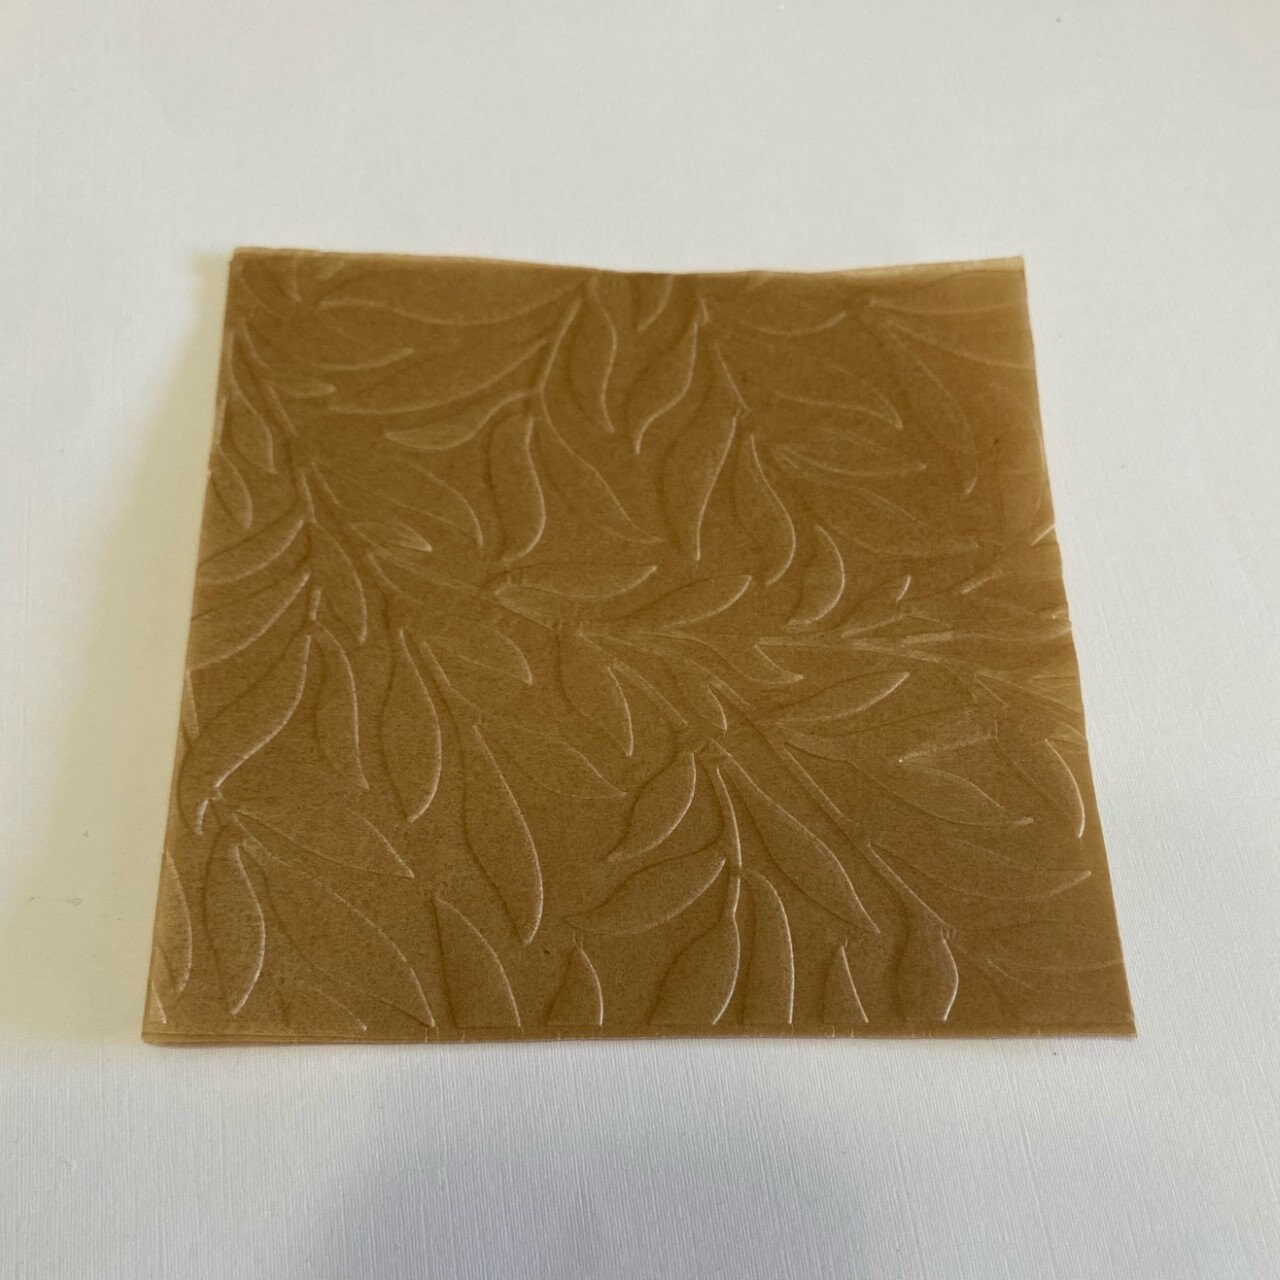 1000 Sheets Precut 4x4 Parchment Paper Squares, Unbleached Liners for  Baking